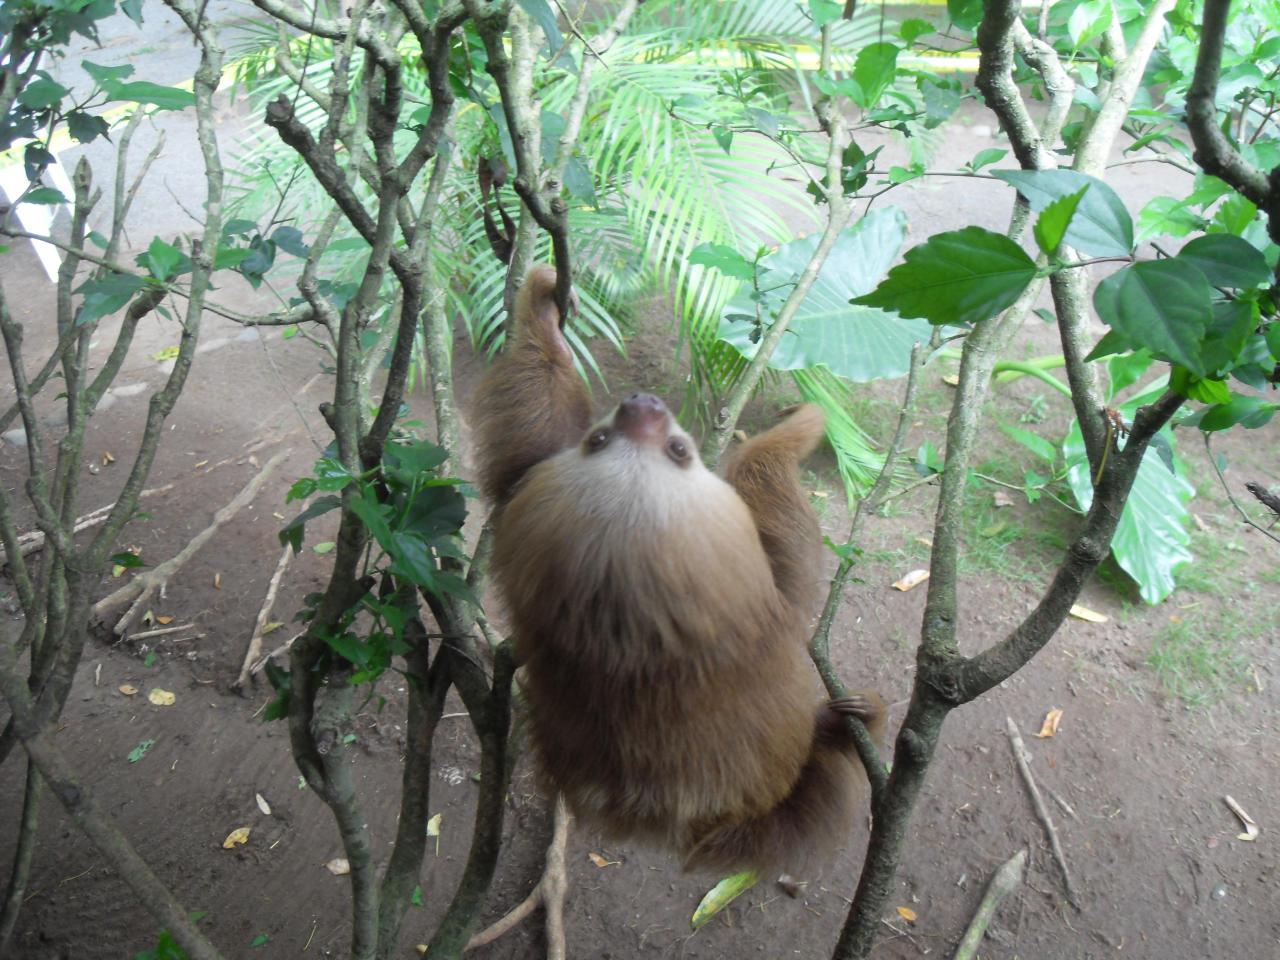 Sloth at Jaguar Rescue Center, Puerto Viejo